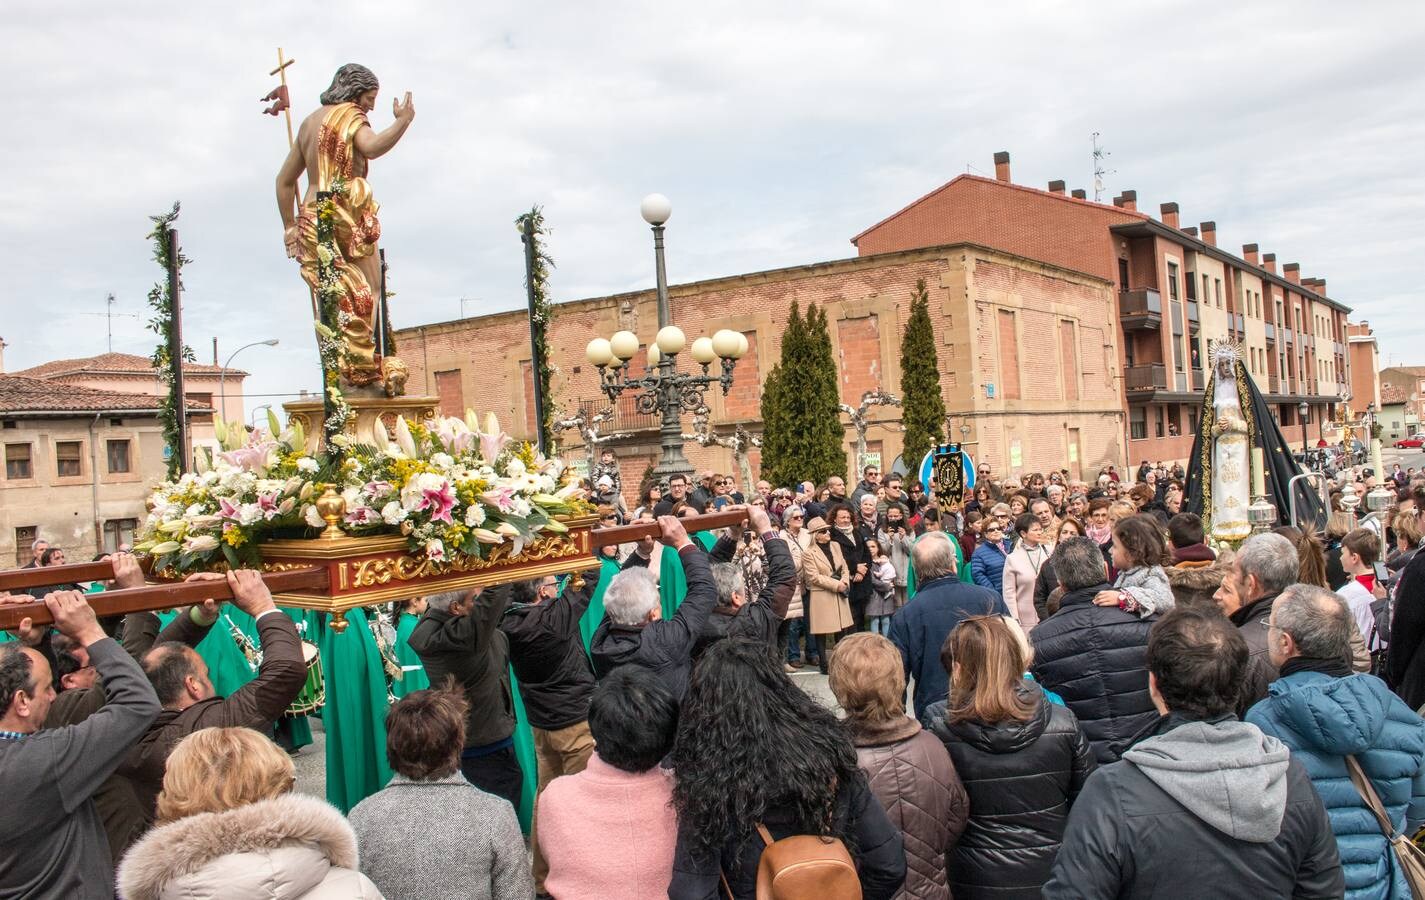 Lanzamiento de dinero y caramelos desde la balconada de la iglesia para celebrar la resurrección de Jesucristo. El Ayuntamiento ha lanzado 1.240 euros, más otros 20 euros la cofradía.